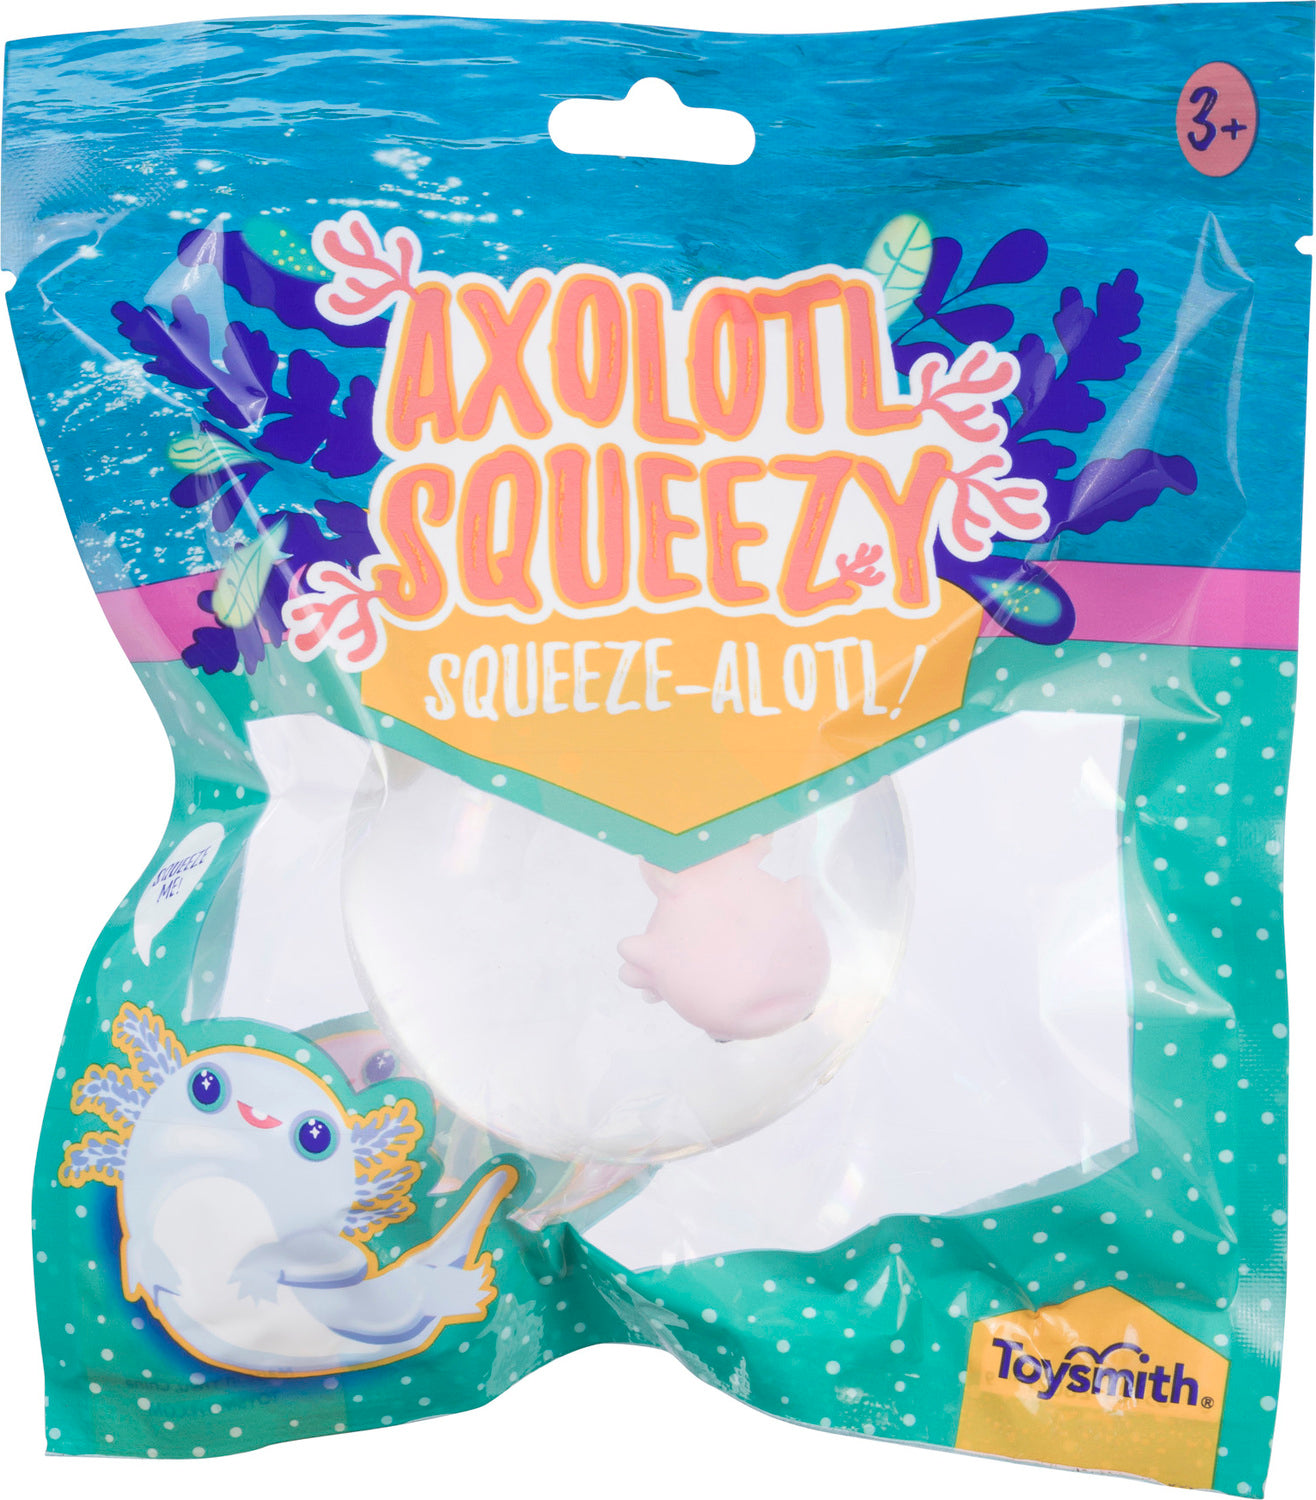 Axolotl Squeeze Ball (12)